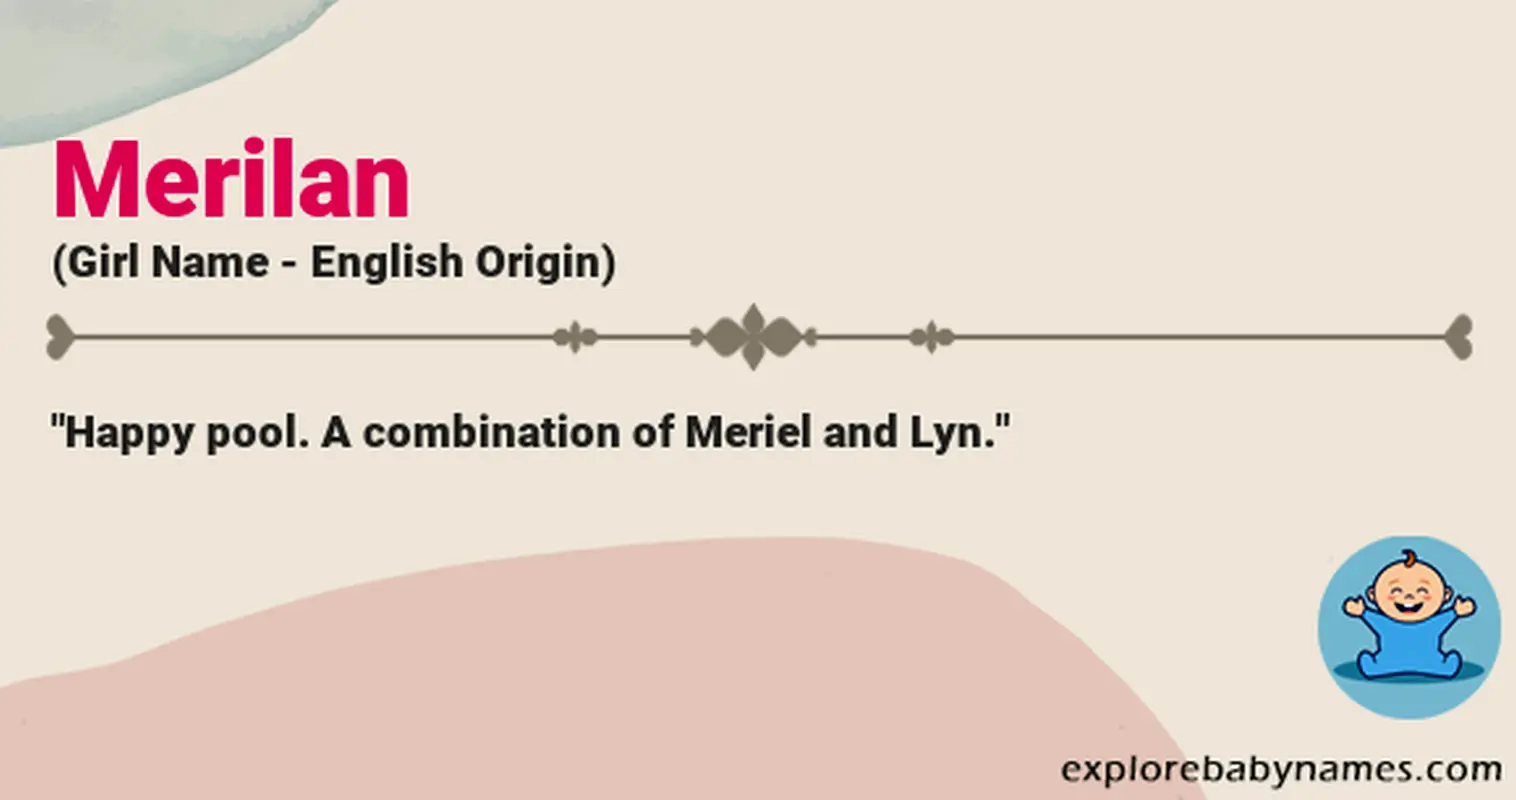 Meaning of Merilan